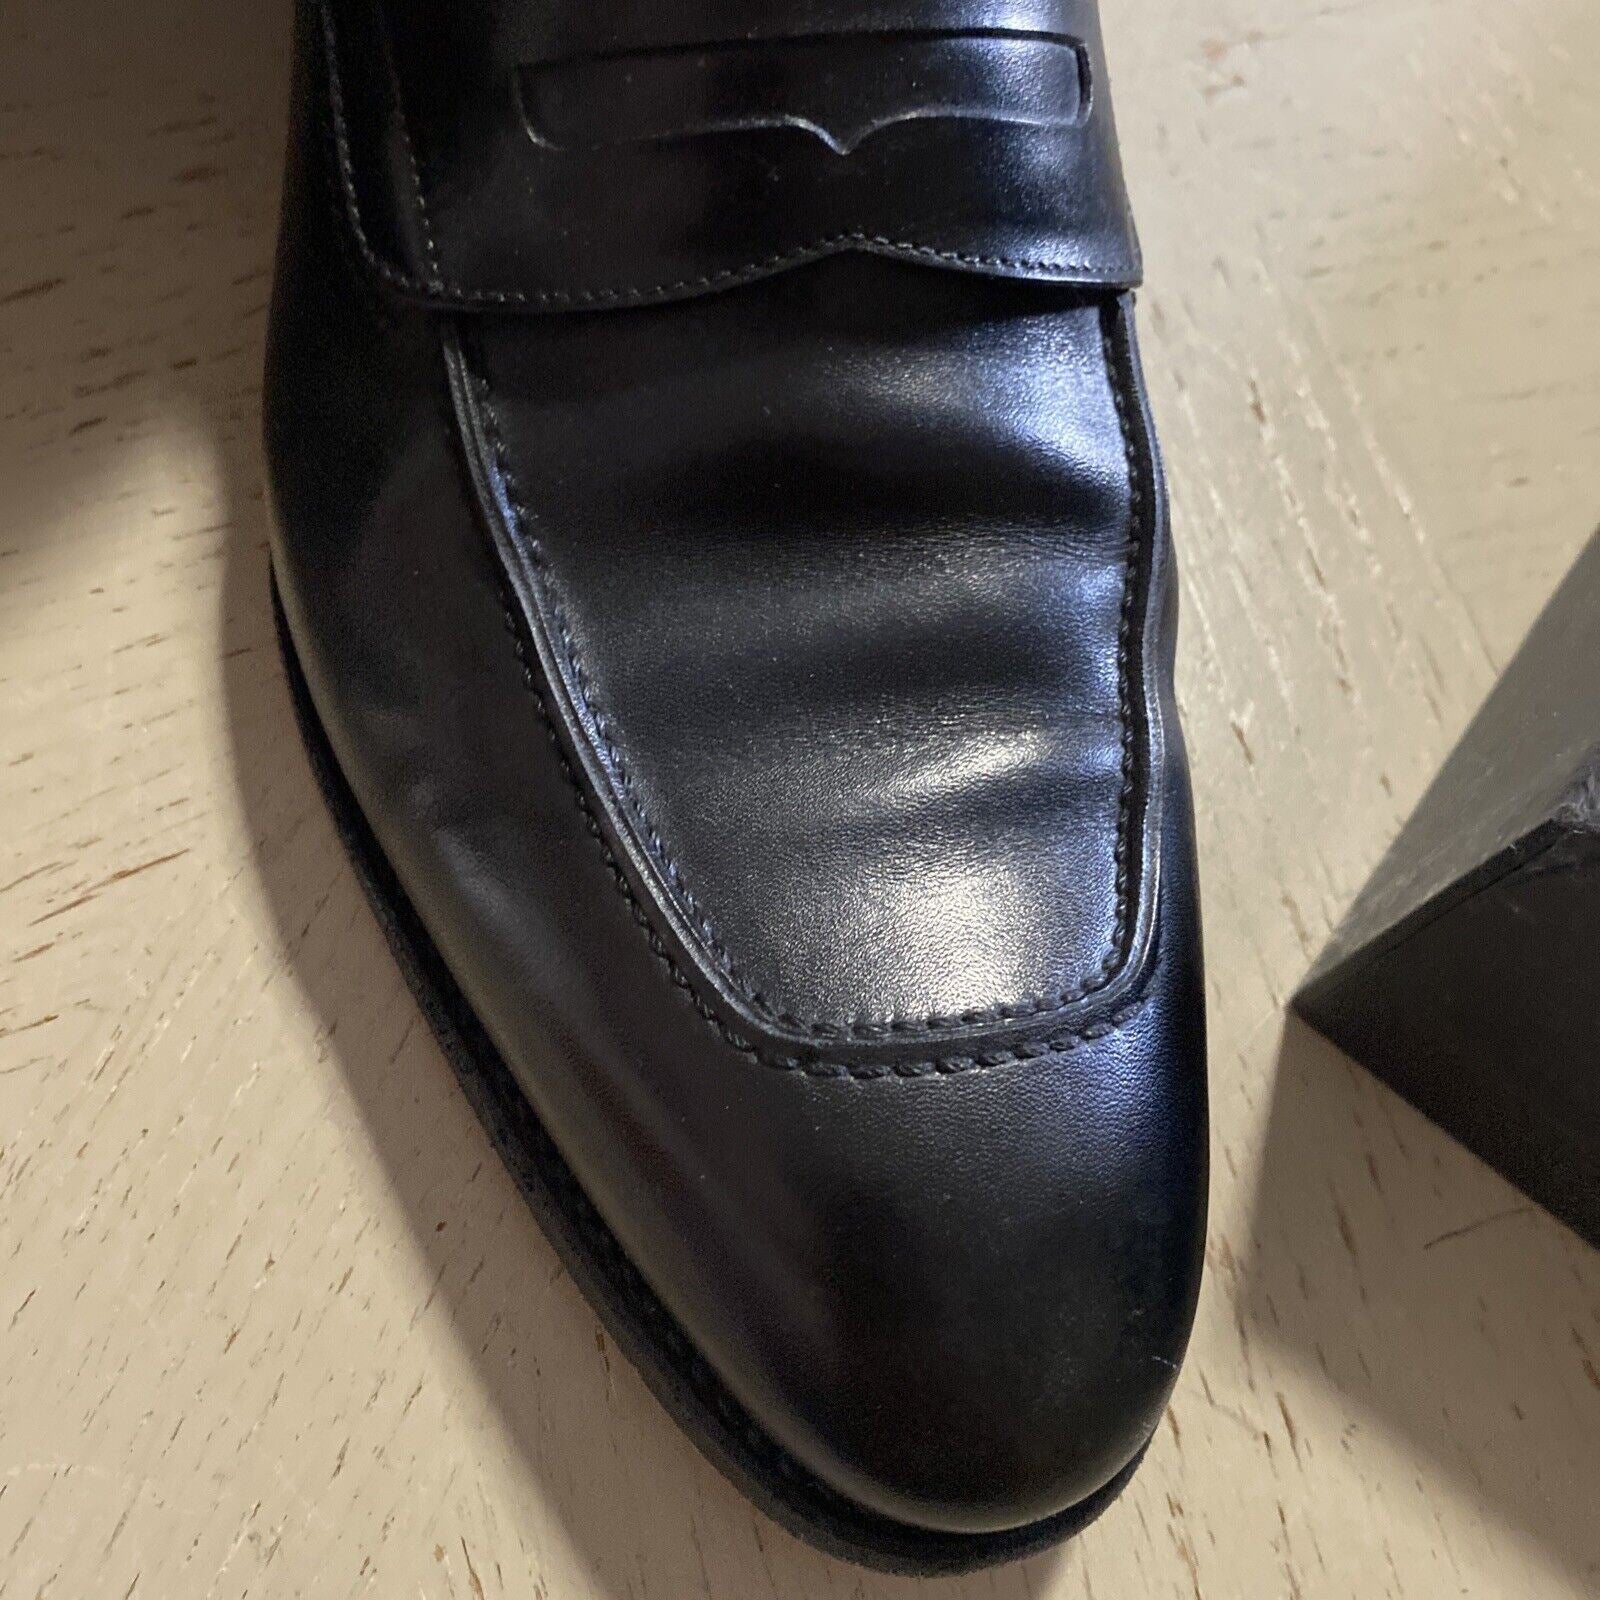 1295 $ Ermenegildo Zegna Couture Leder-Loafer-Schuhe Schwarz 9,5 US (42,5 Eu)